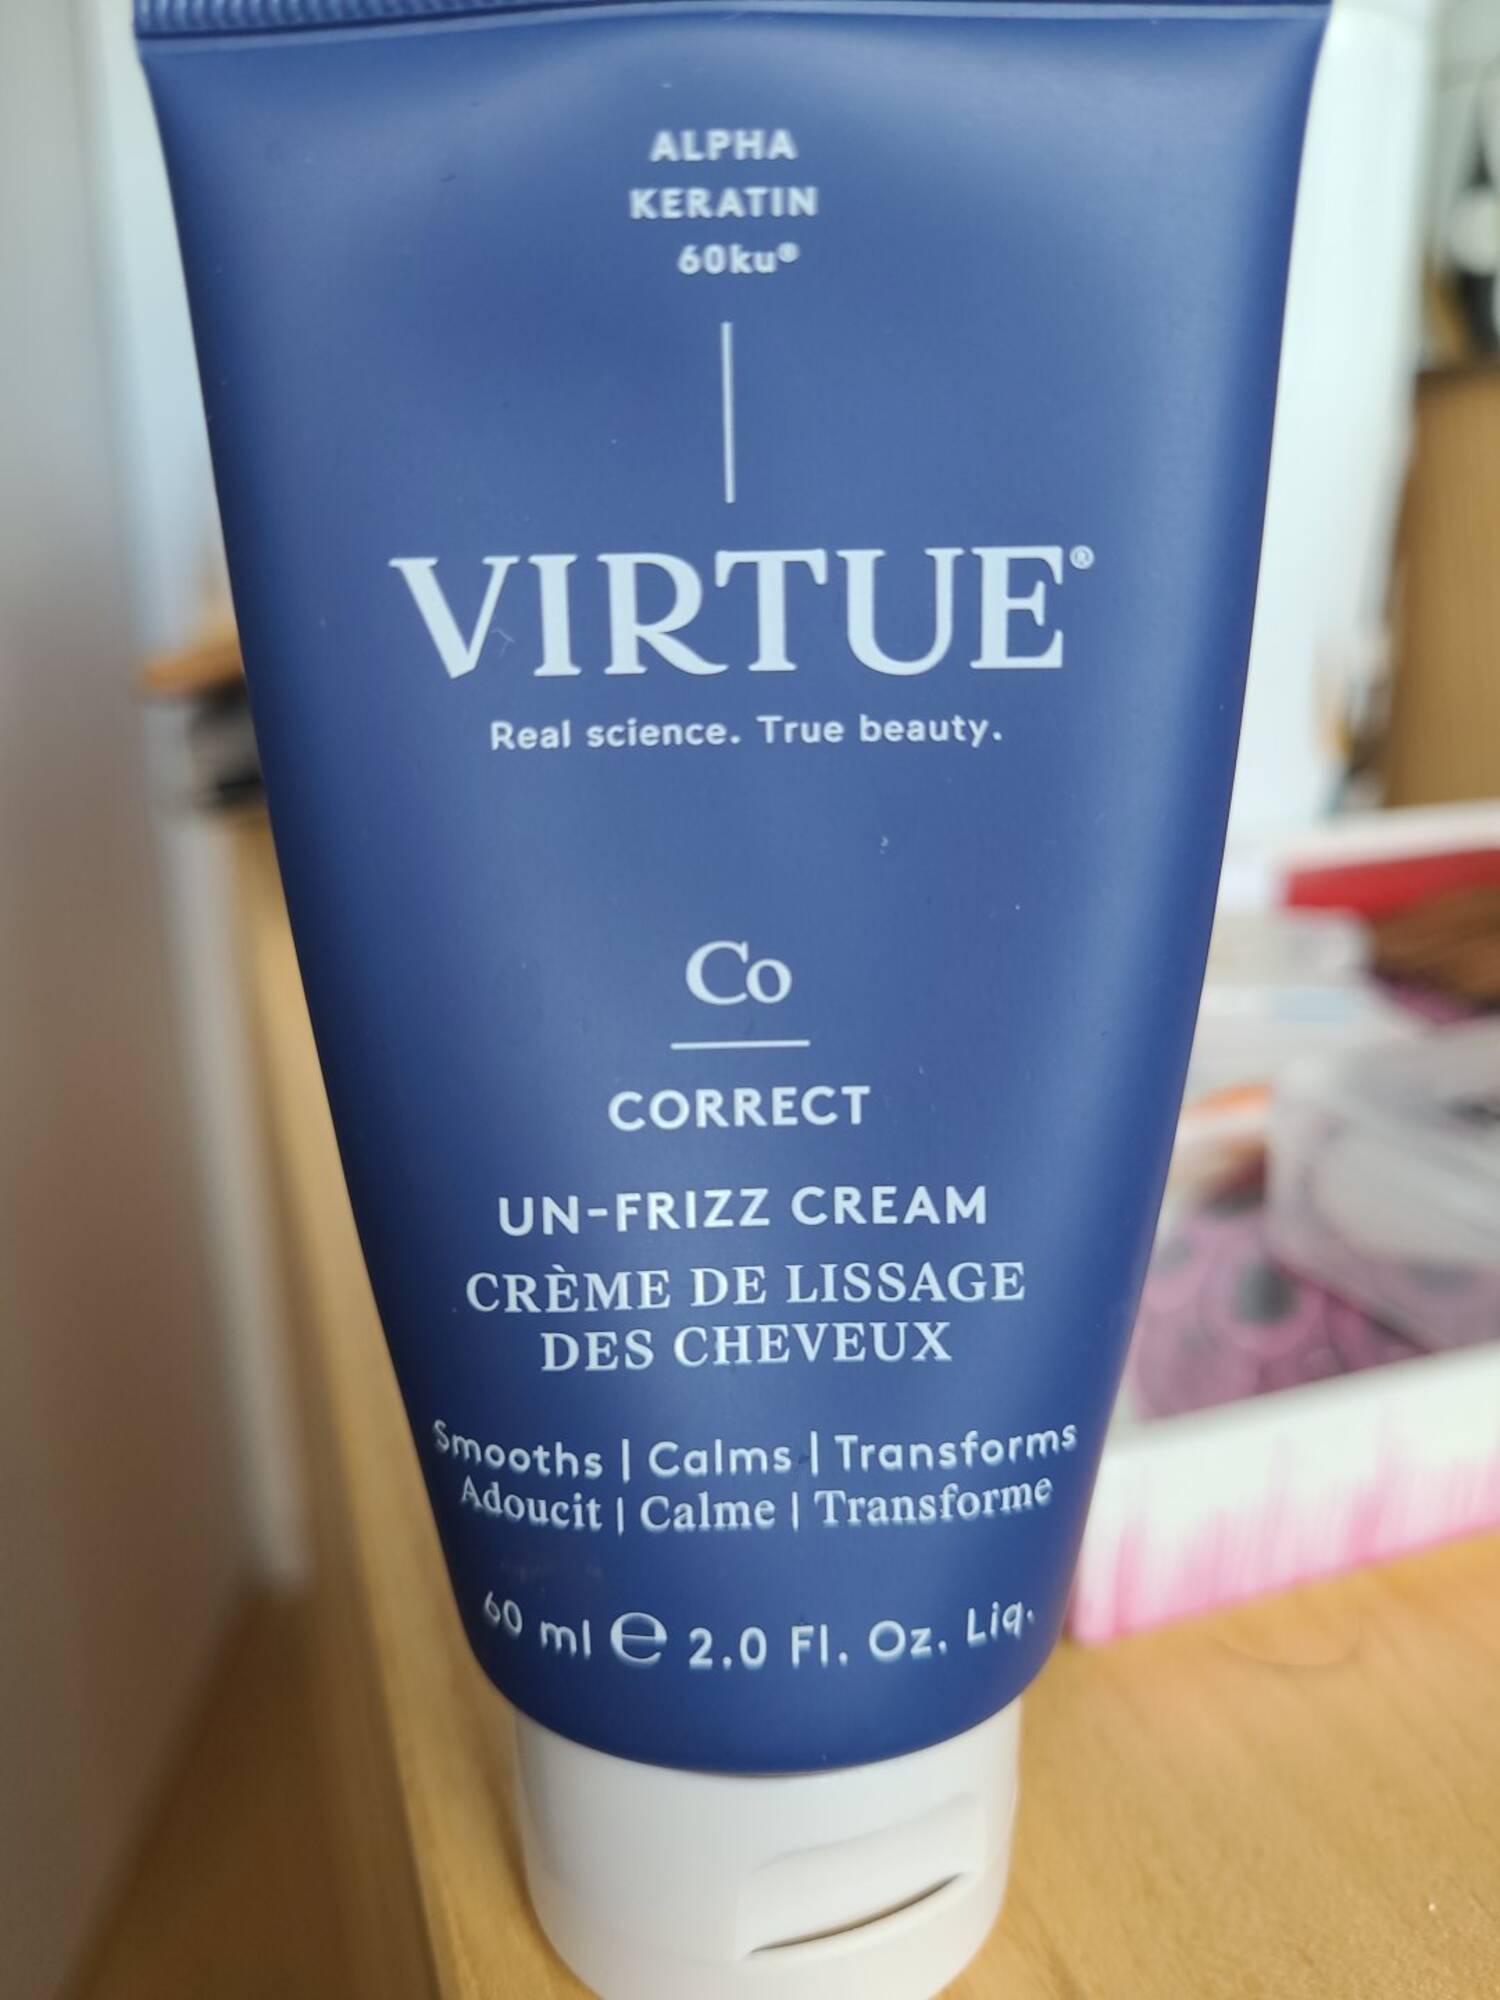 VIRTUE - Co Correct - Crème de lissage des cheveux